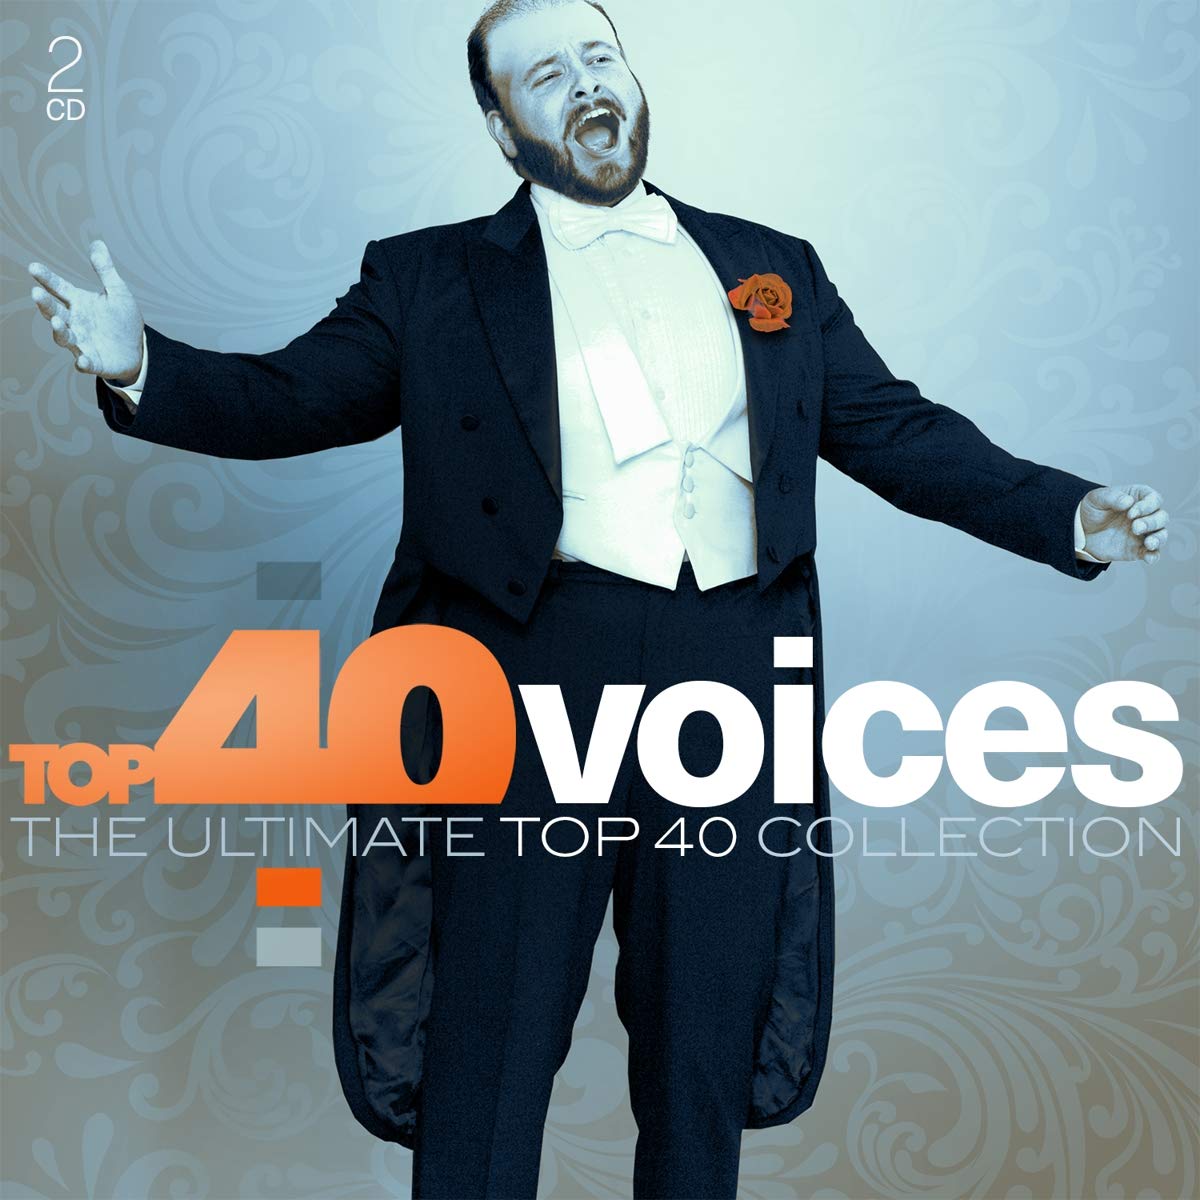 Top 40 Voices